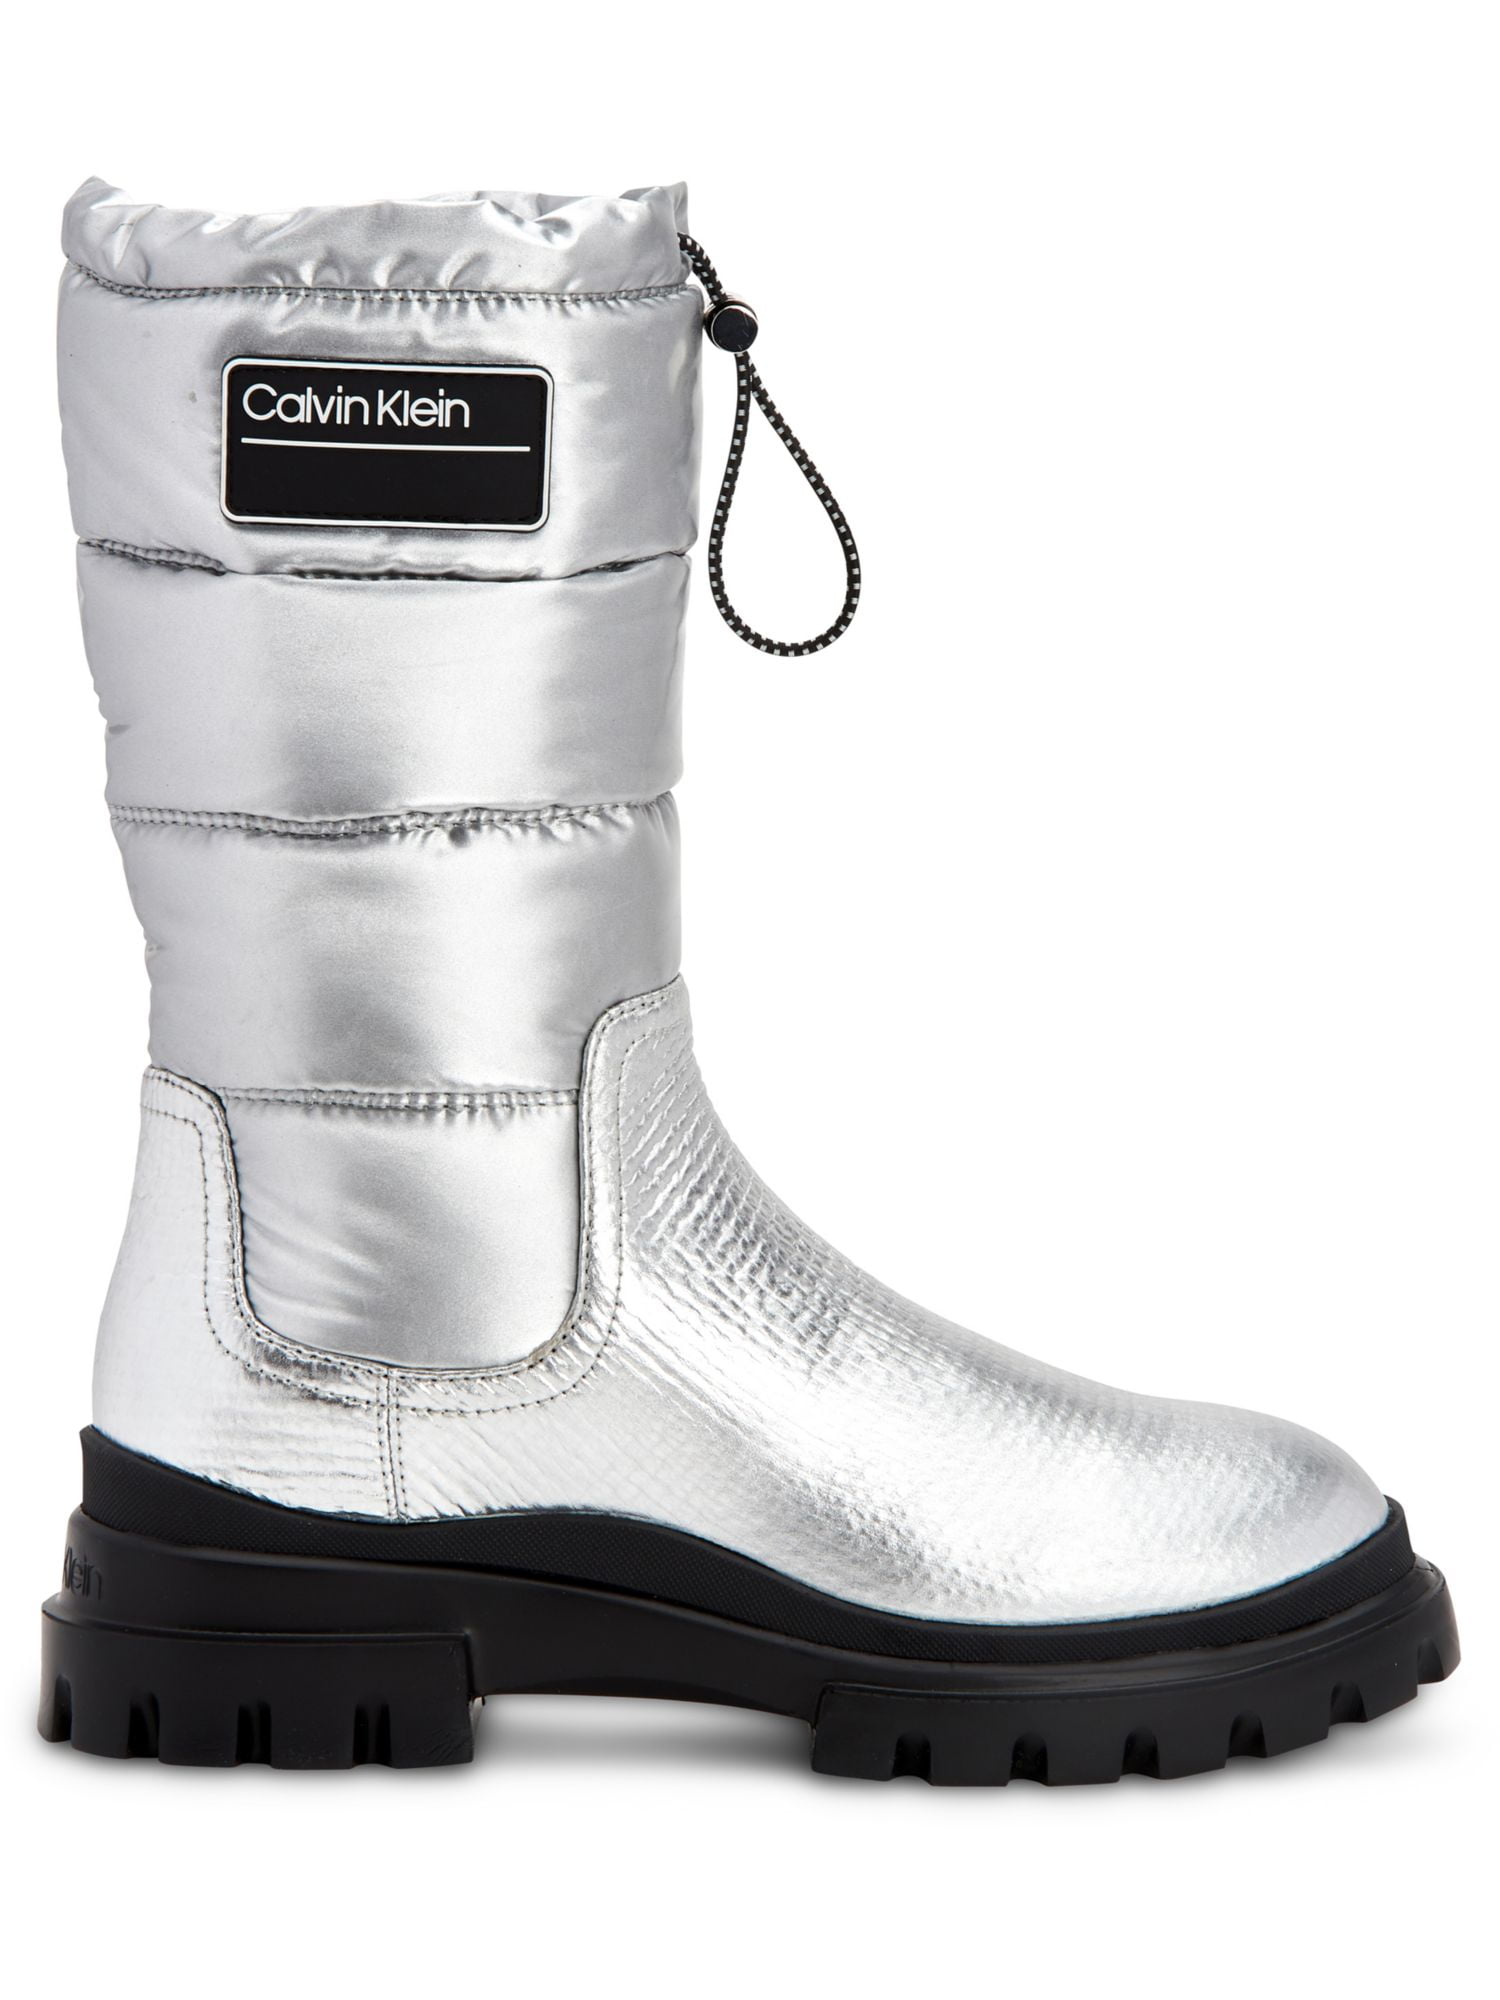 Calvin Klein Womens Laeton Mid-Calf Puffy Winter Boots White  Medium  (B,M) 